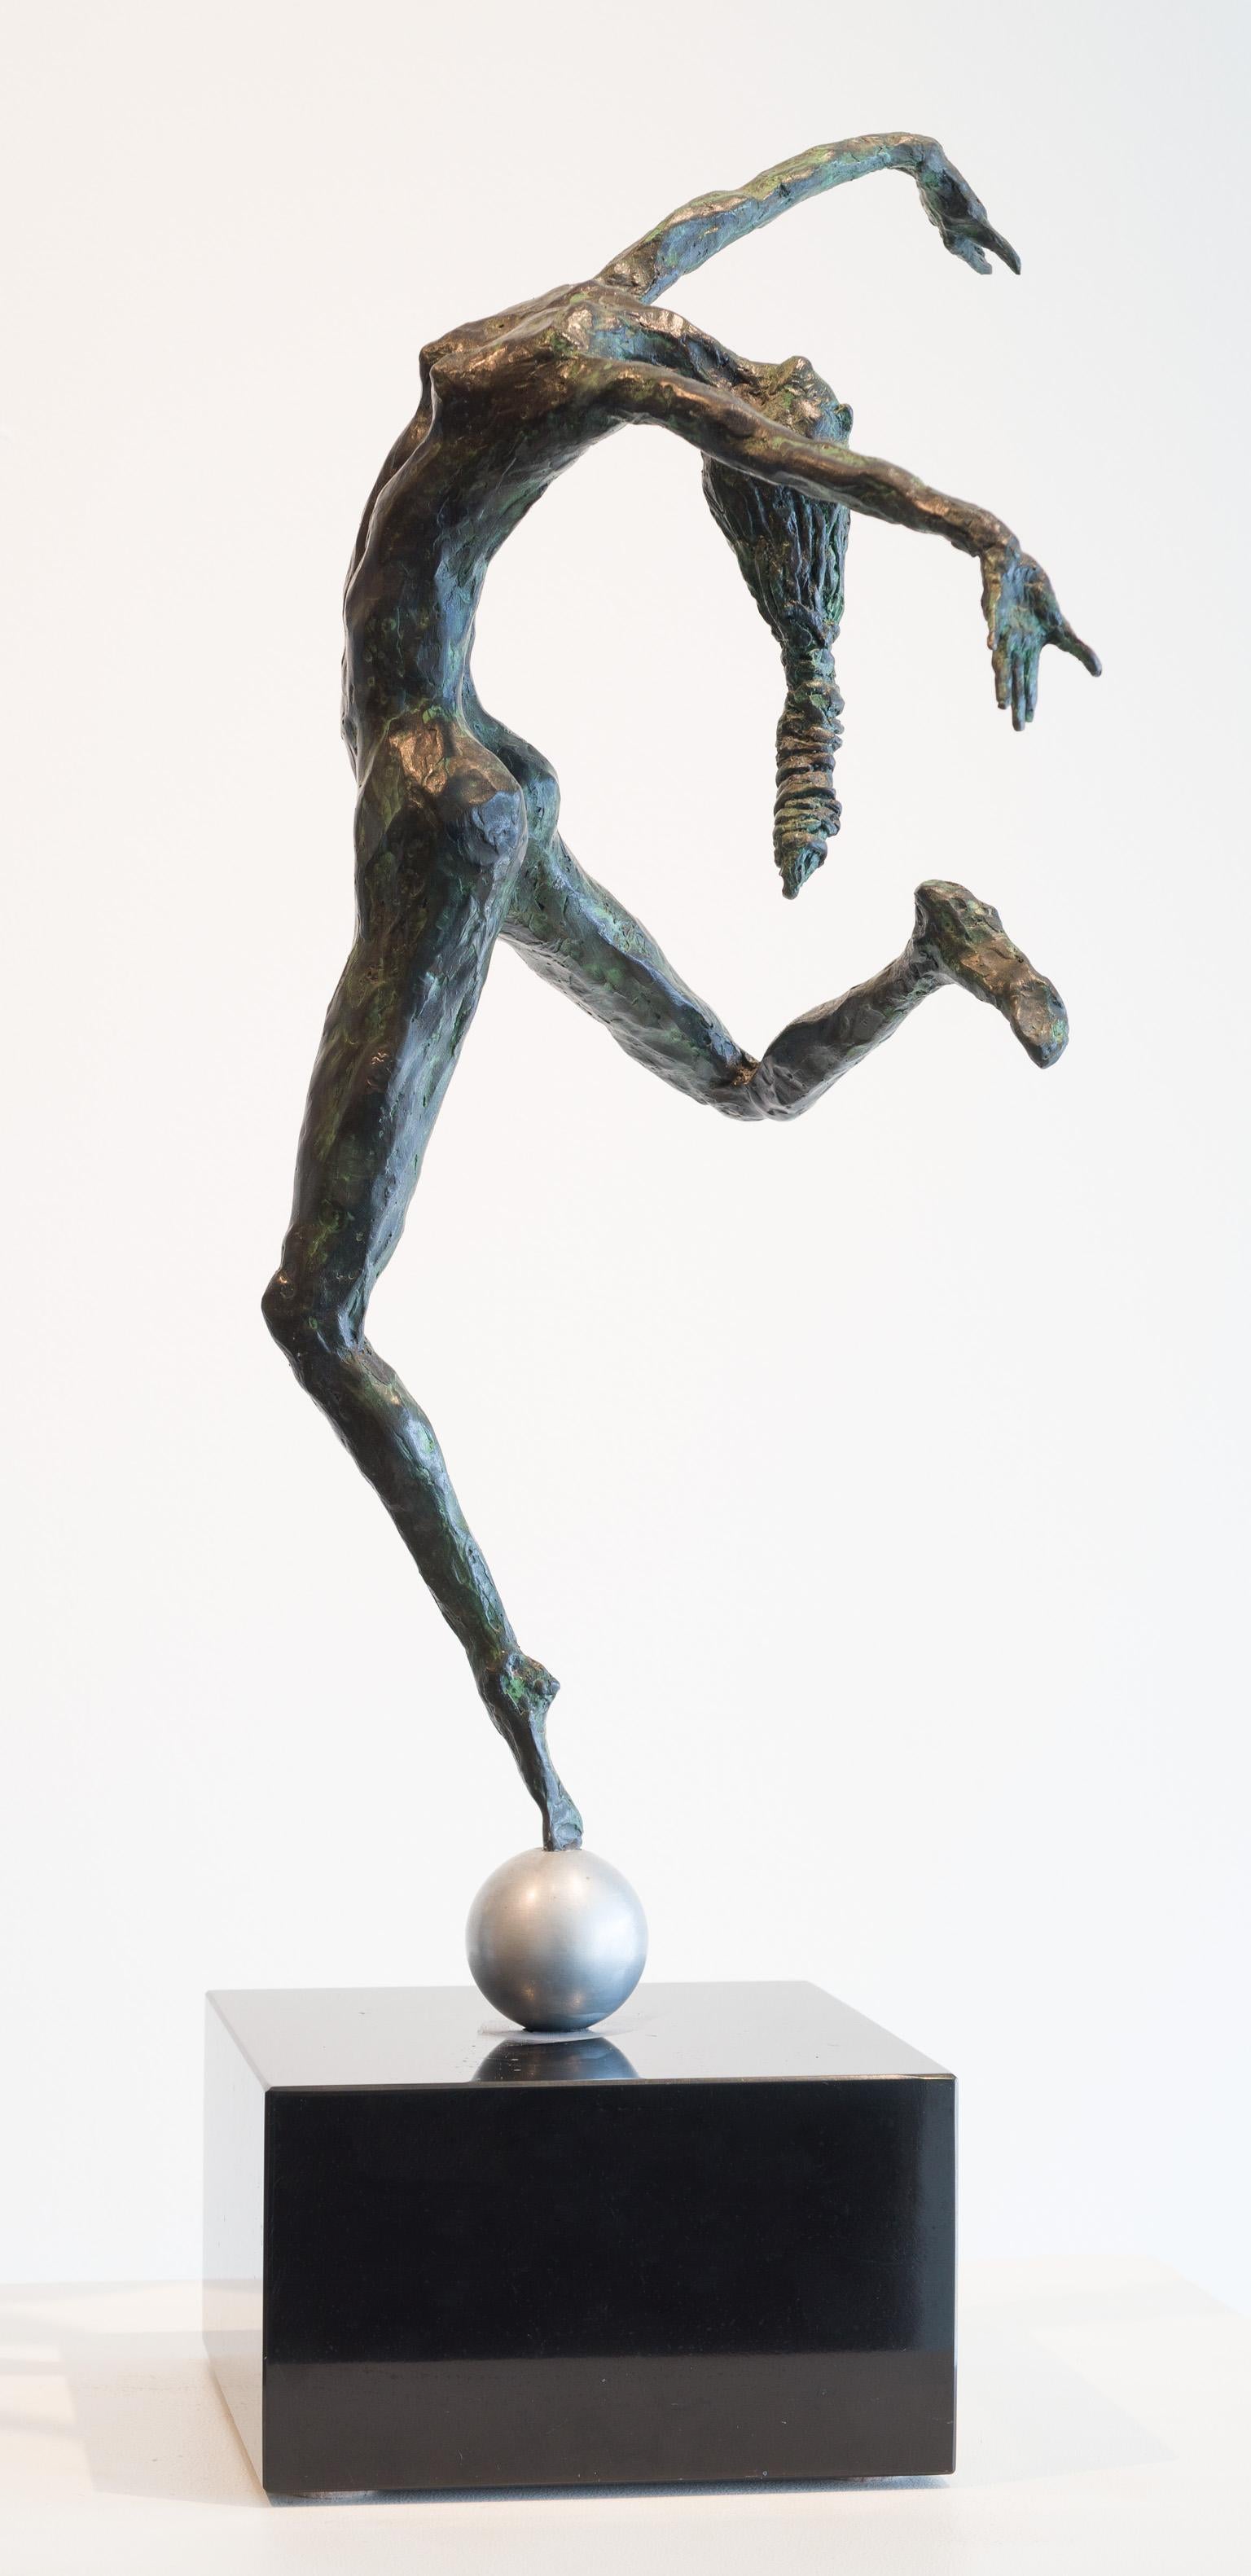 Dancer on Aluminum Ball - Sculpture by Don Wilks